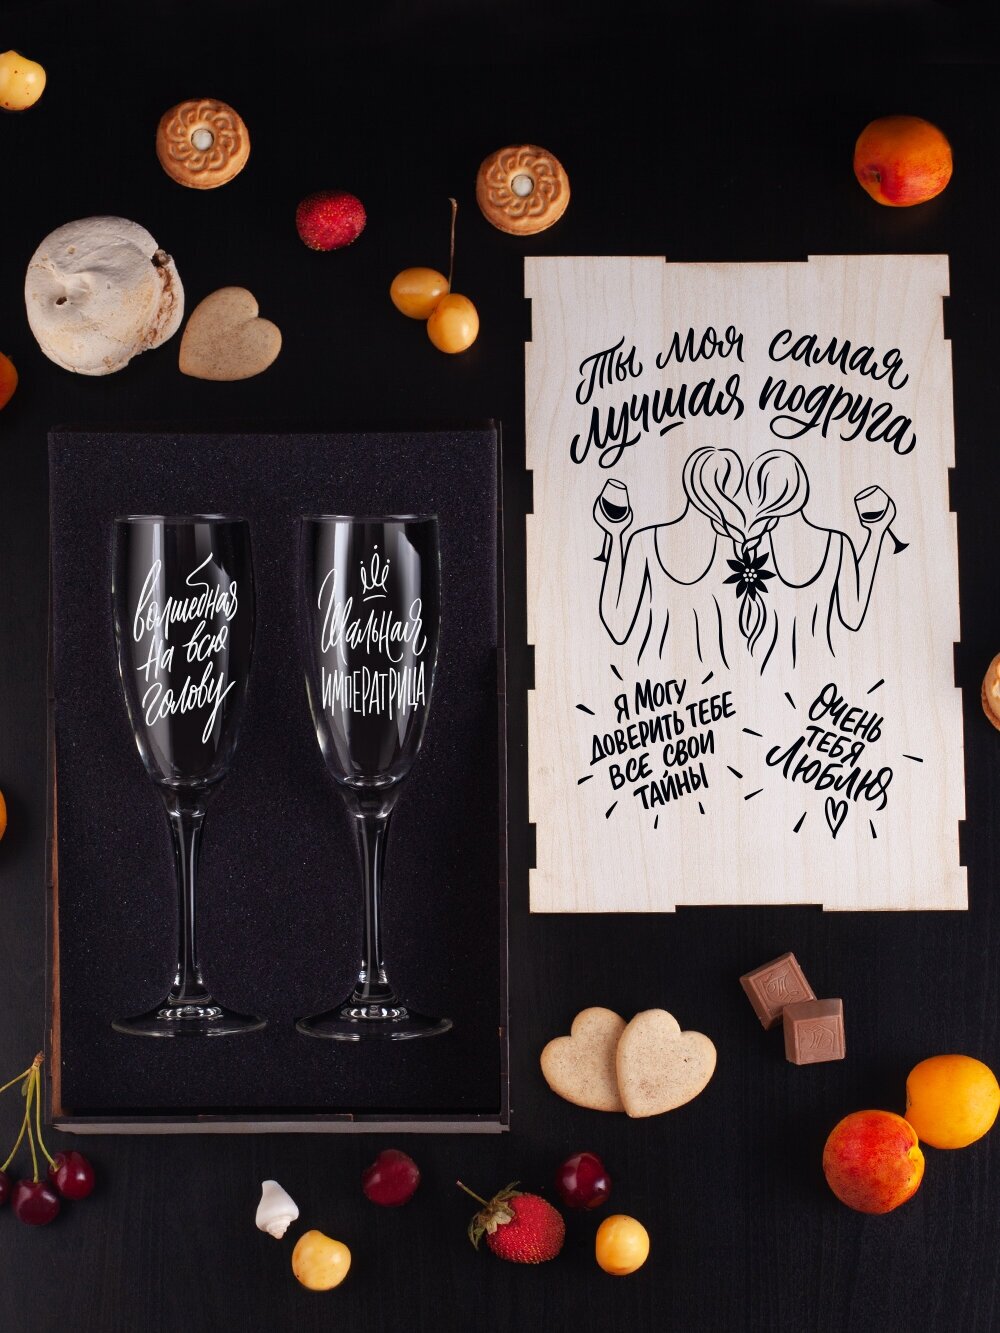 Набор бокалов для шампанского с гравировкой. Подарок девушке, подруге, любимой на день рождения, юбилей, новый год